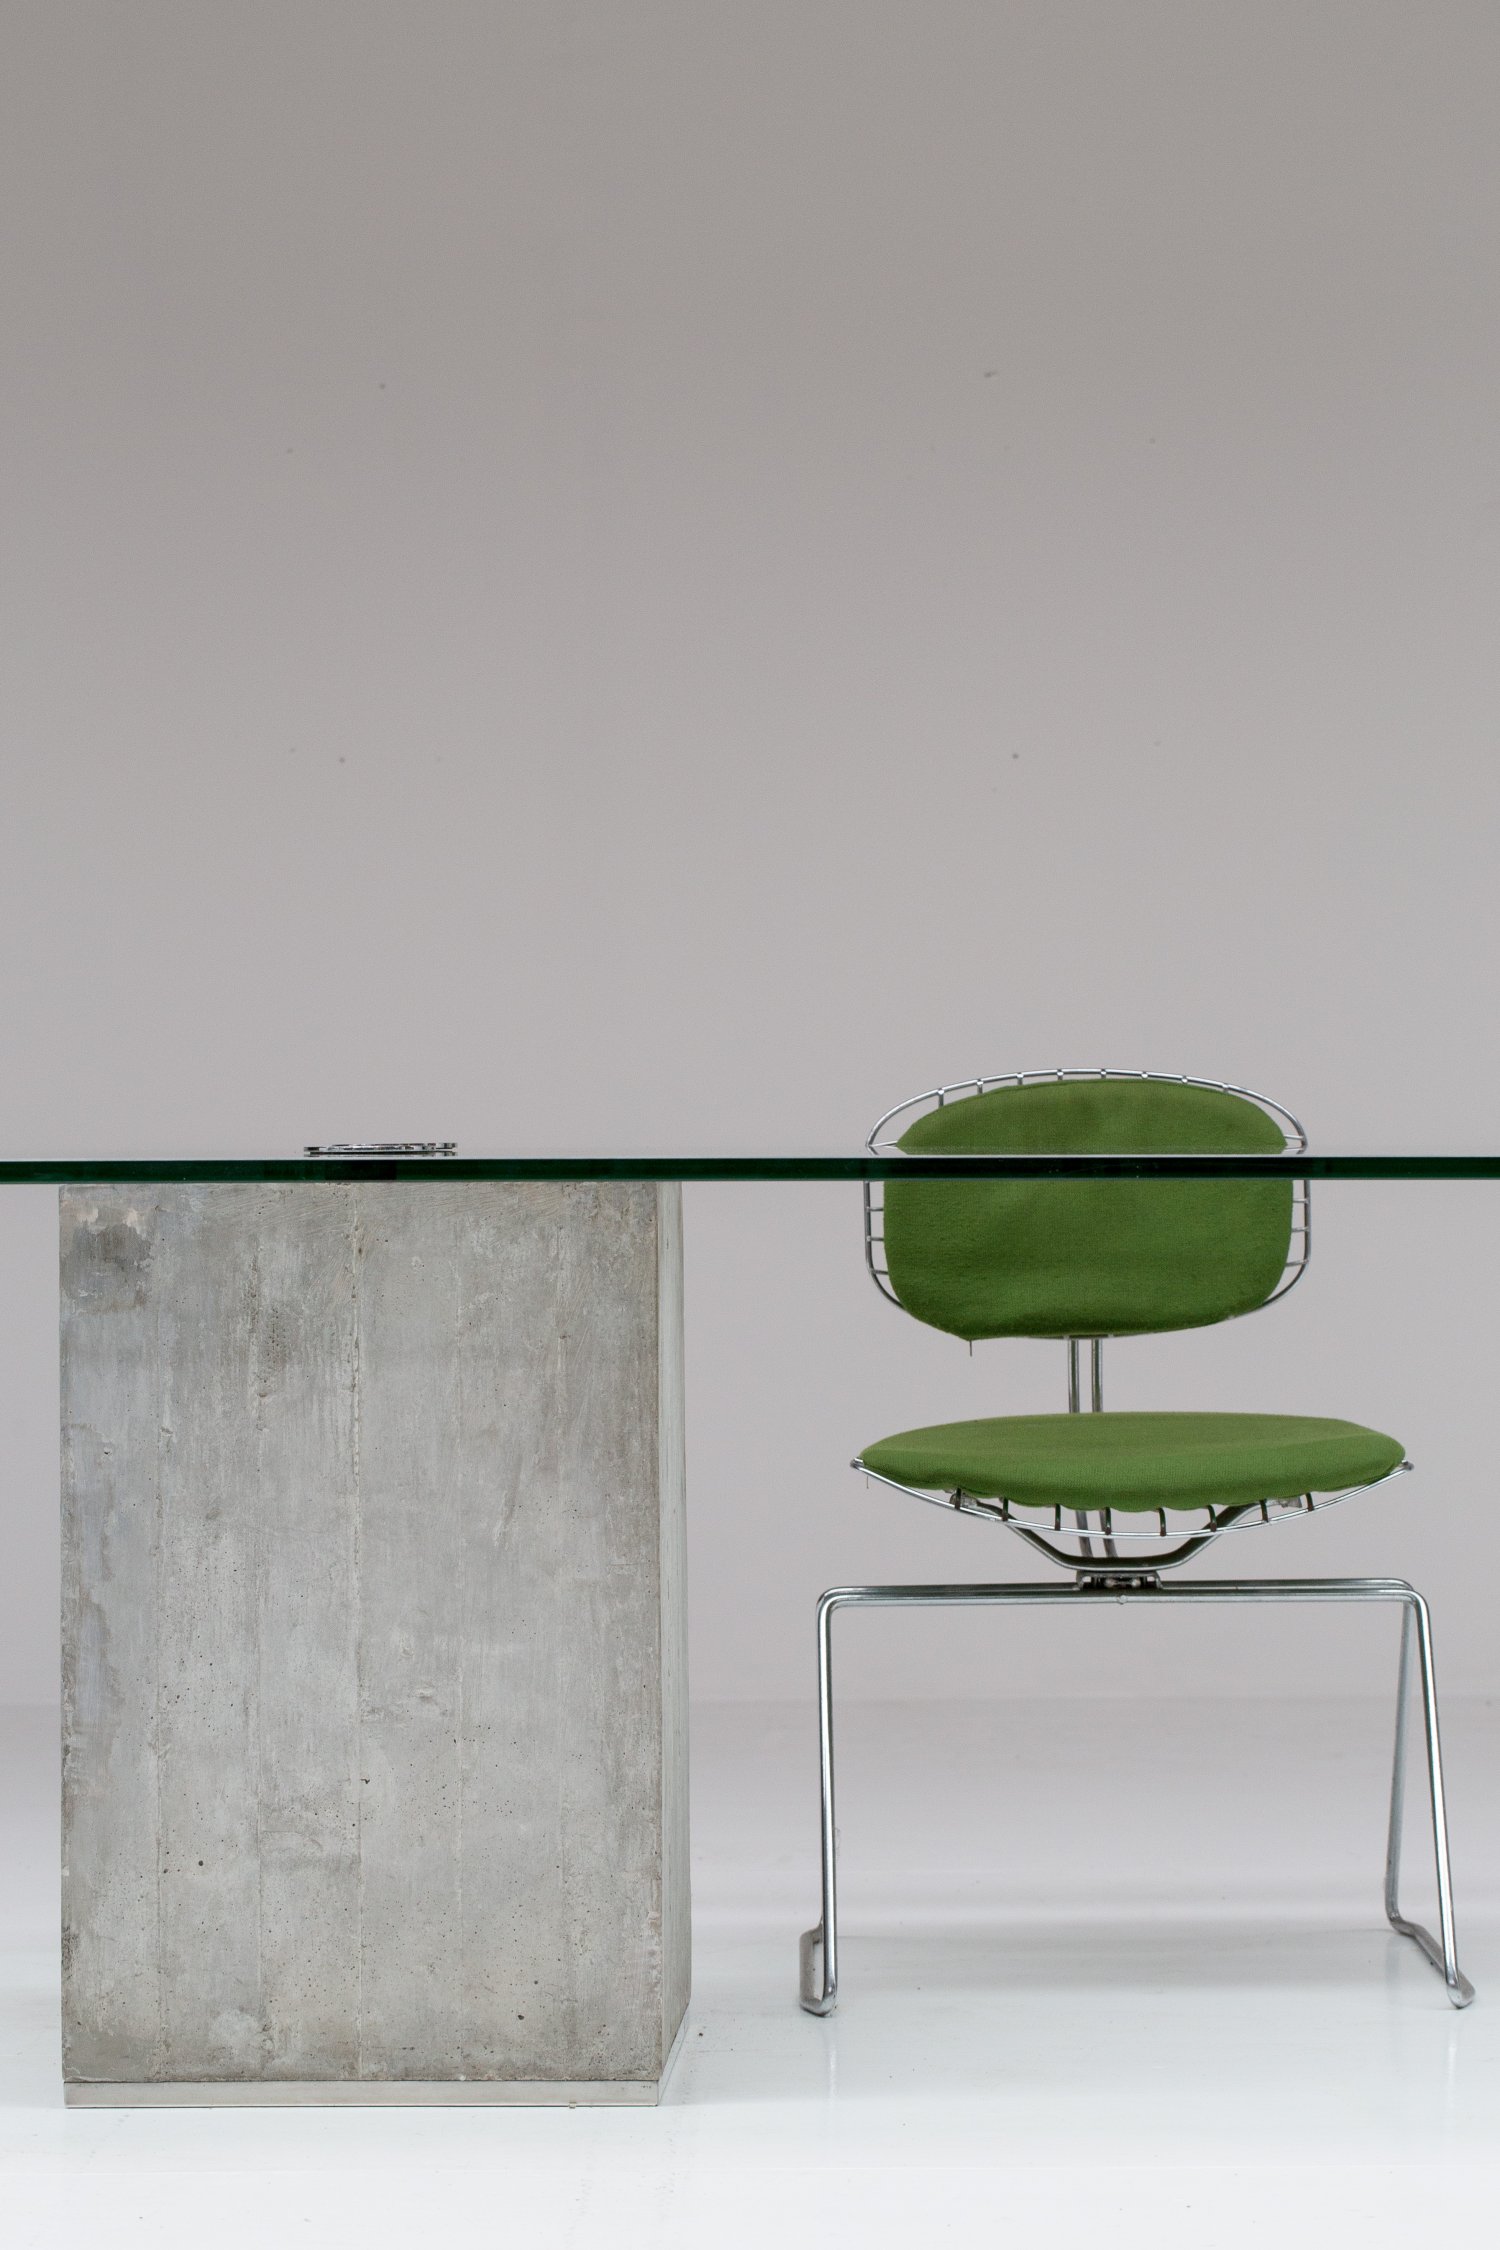 Saporiti concrete & glass table.